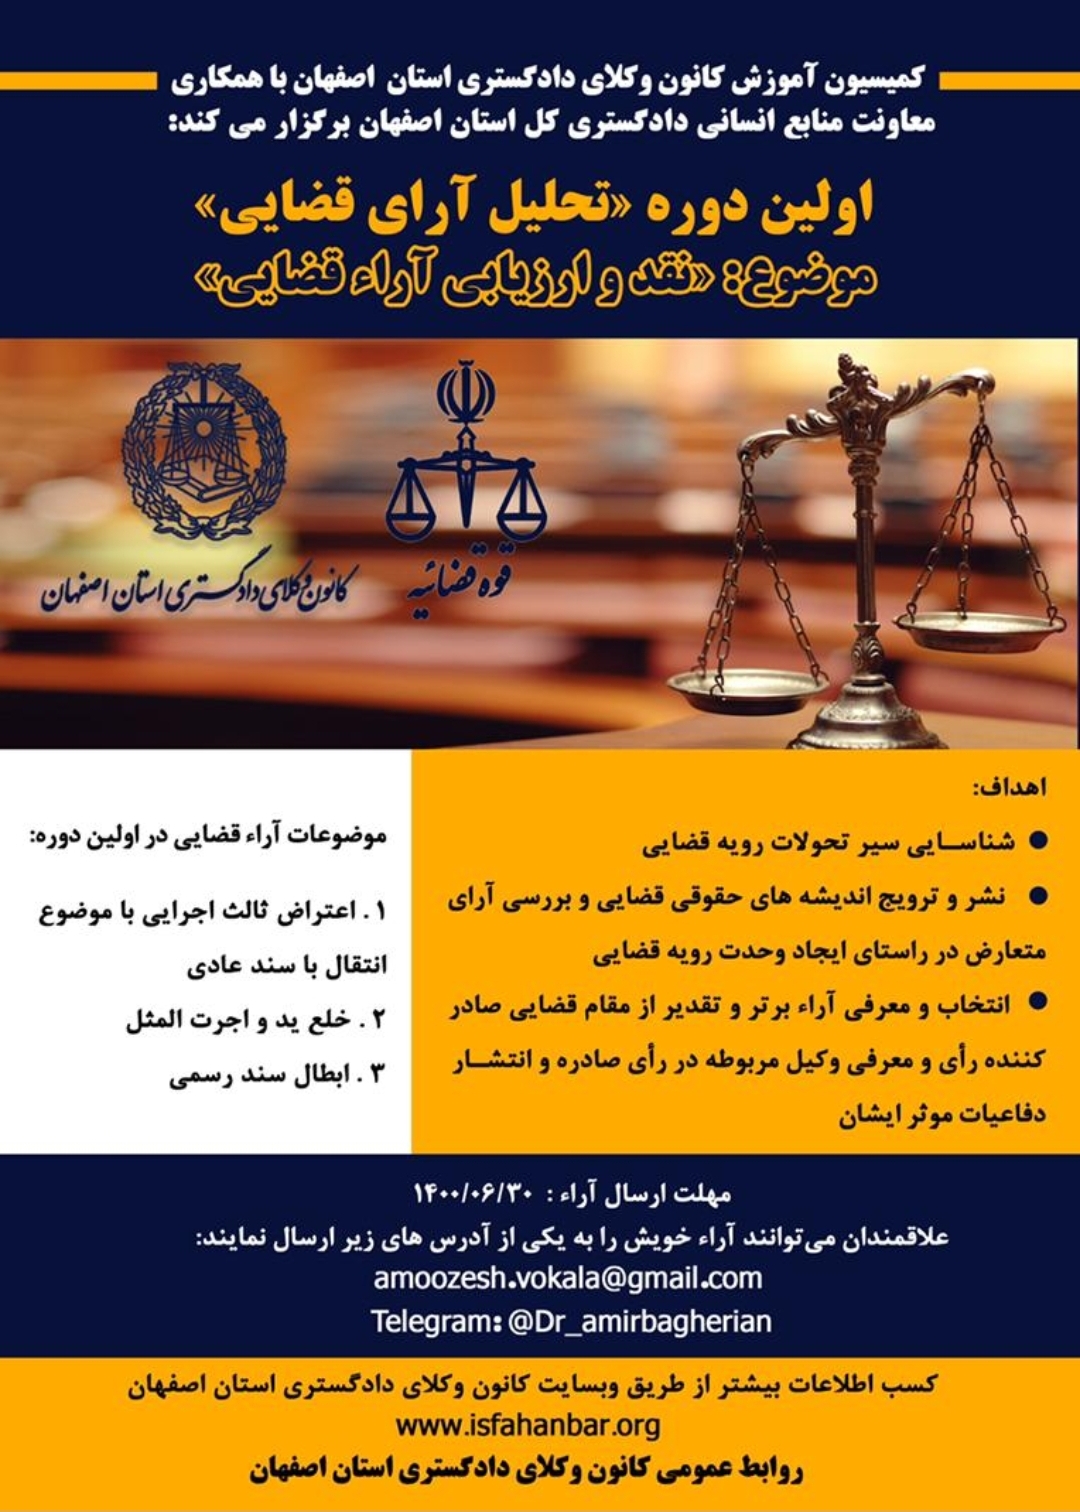 کمیسیون آموزش کانون وکلای اصفهان با همکاری معاونت منابع انسانی دادگستری کل استان برگزار می کند: